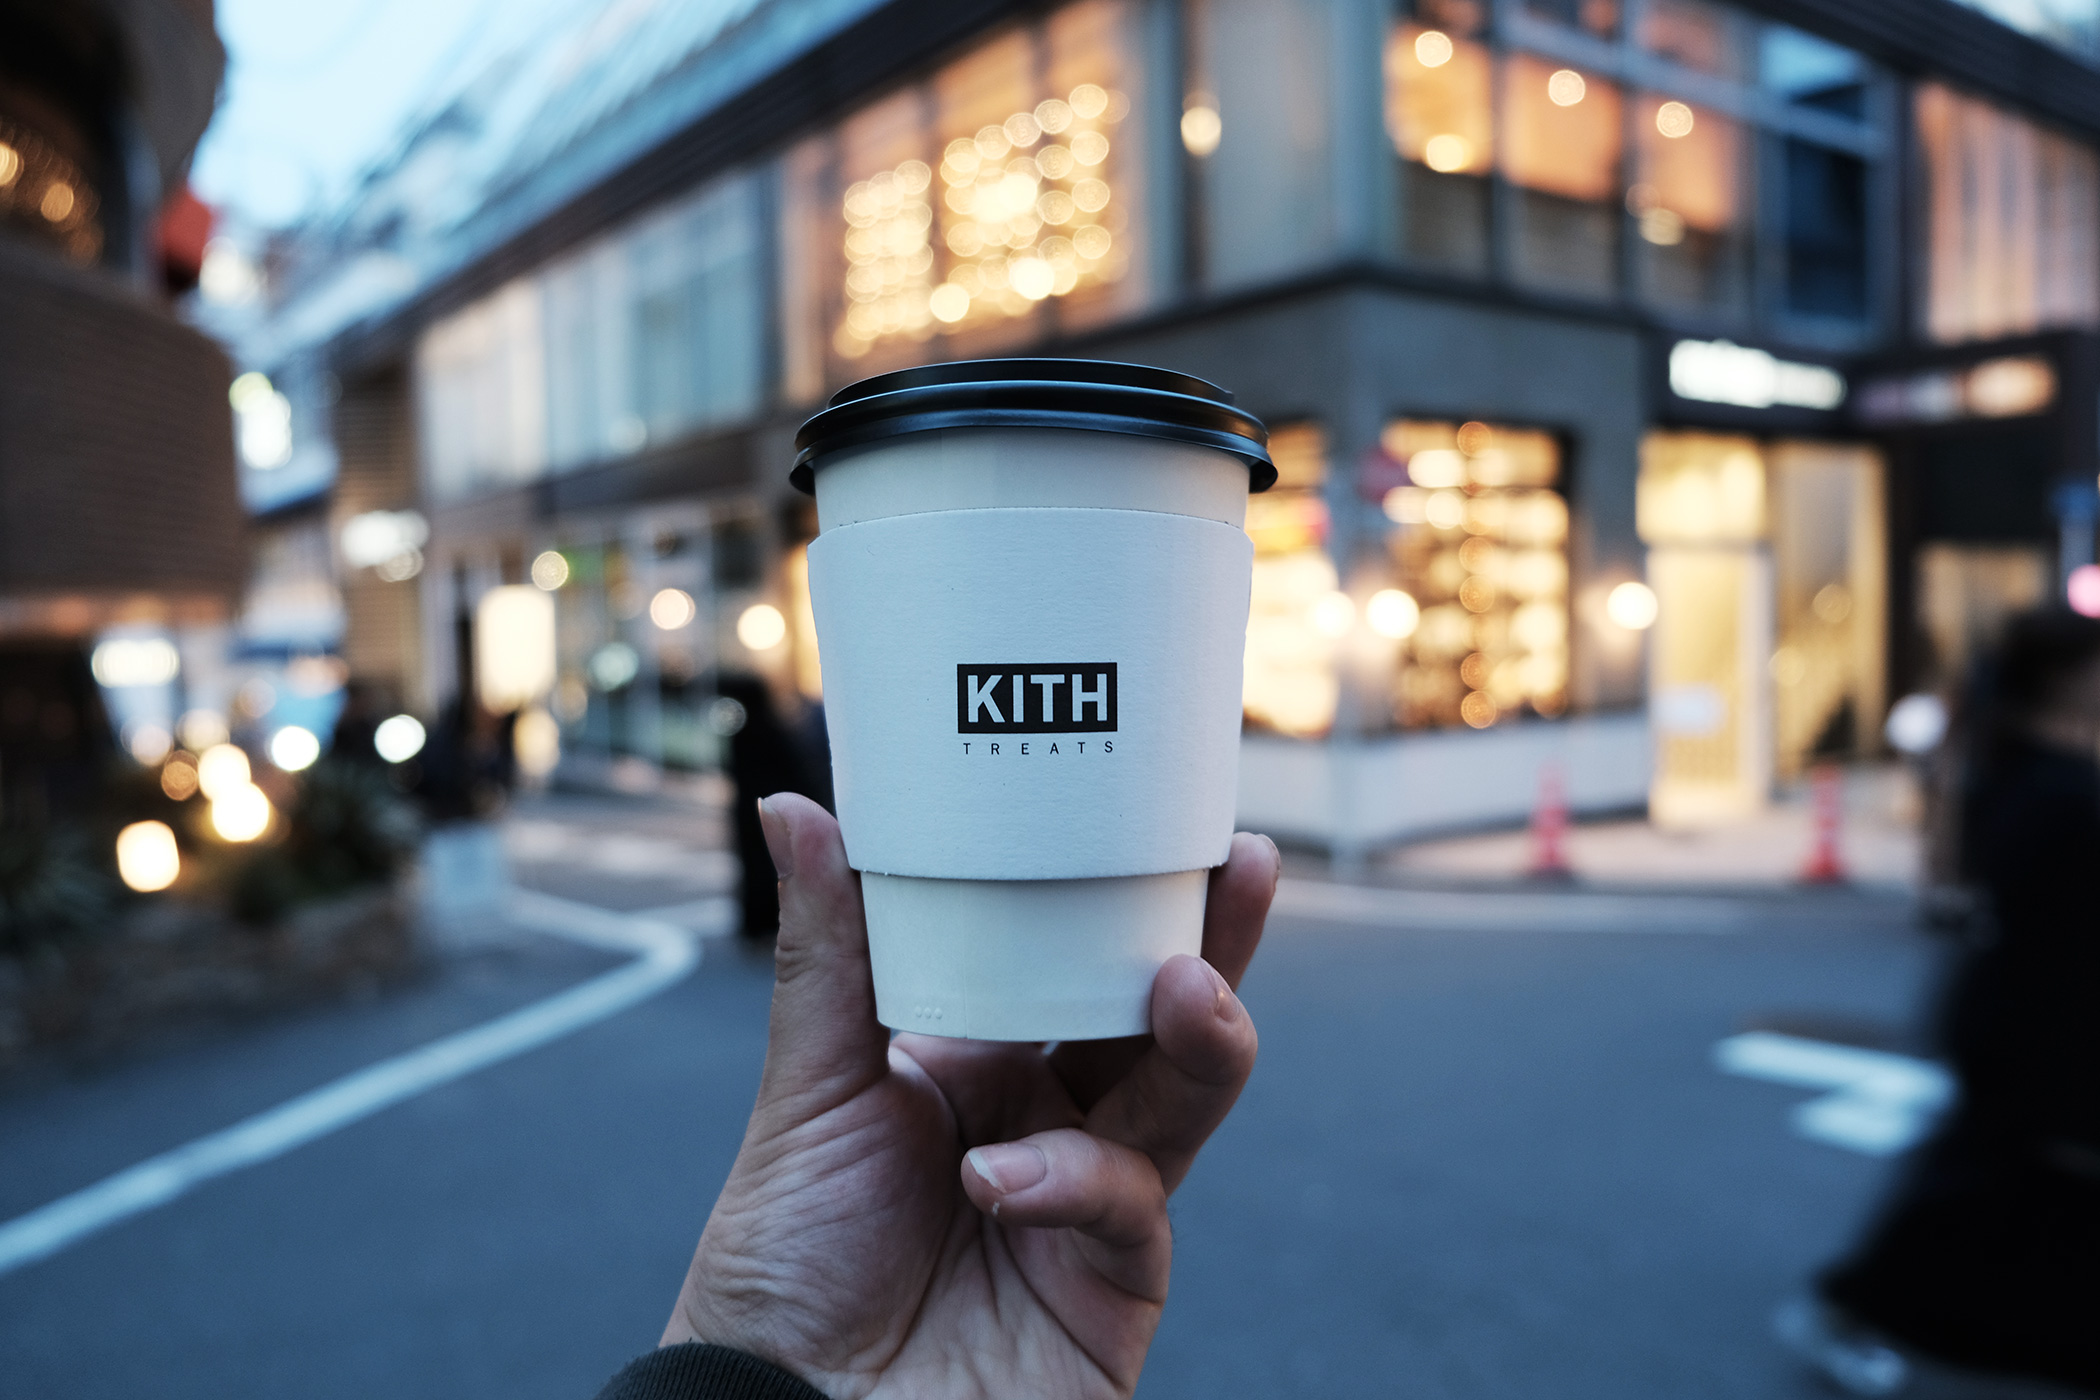 KITH Treats Tokyo あのシリアルバーがコーヒーをリリース